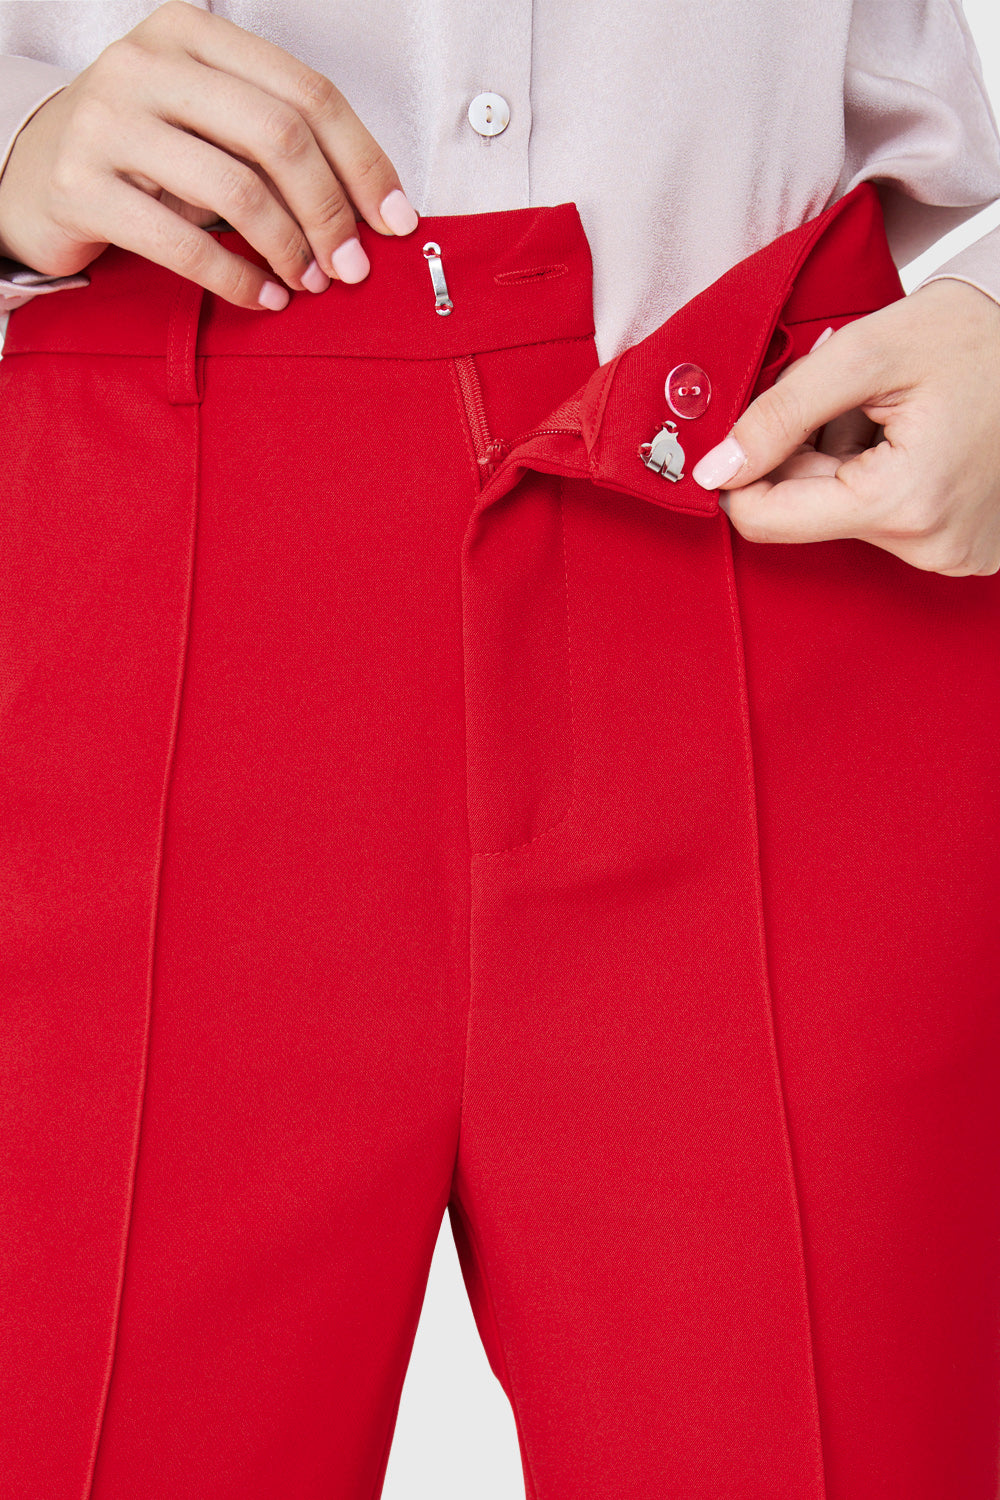 Pantalón Vestir Costuras Frontales Rojo